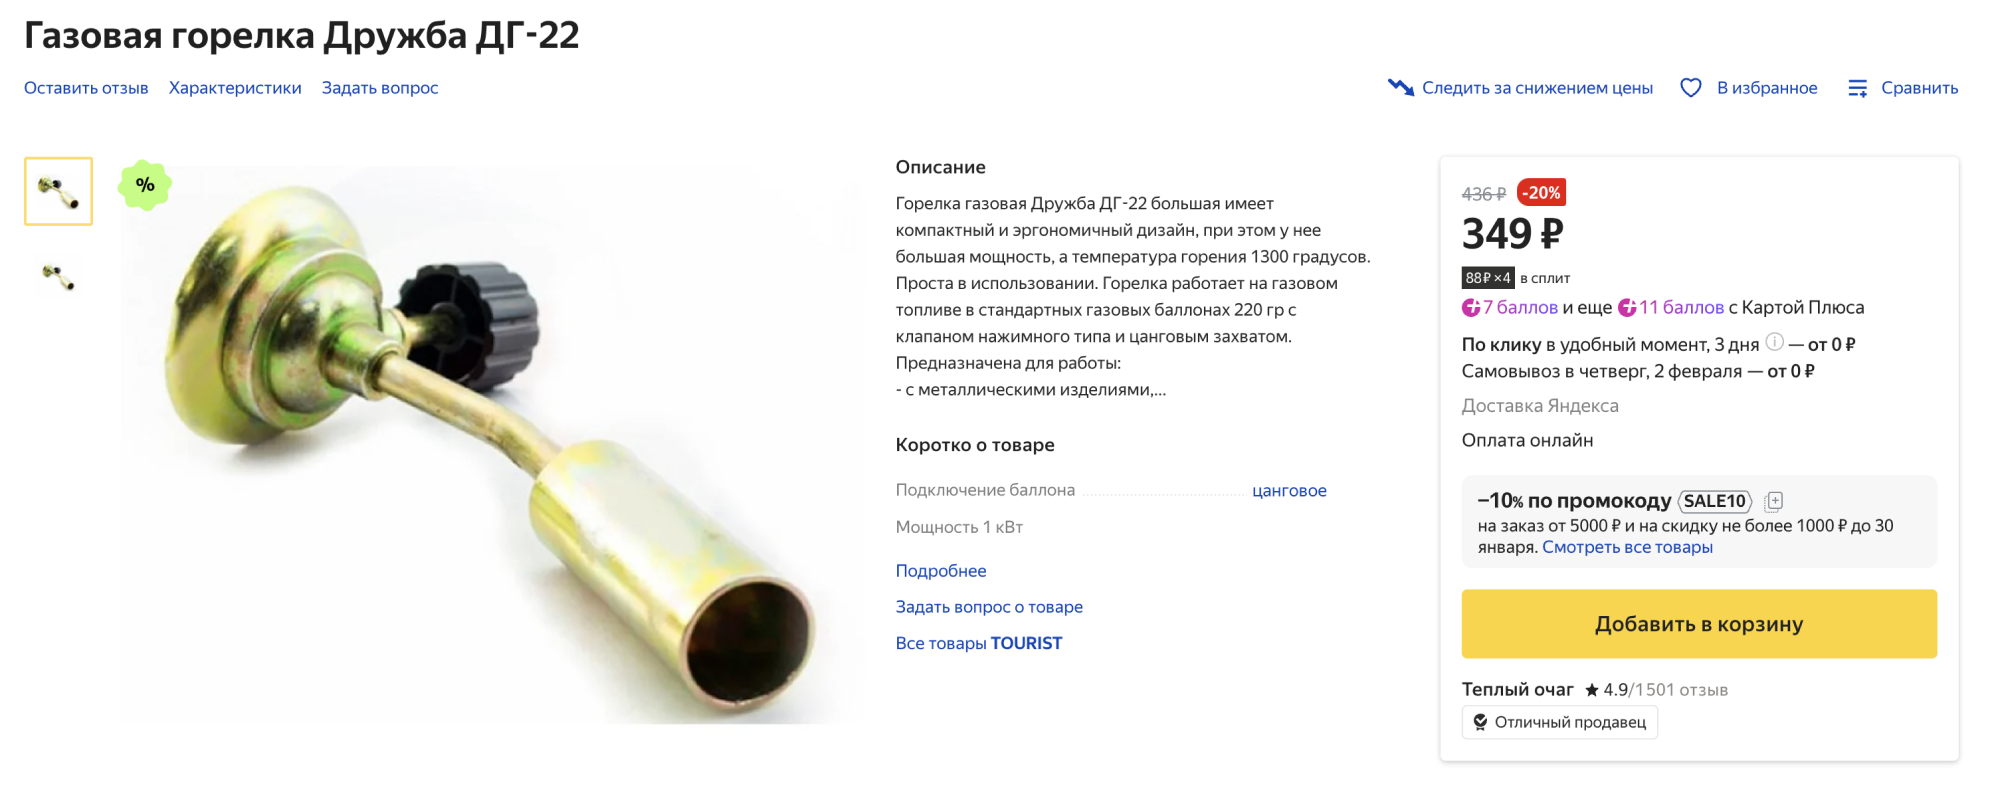 Газовой горелкой нельзя работать рядом с деревом, проводами и розетками. Источник: market.yandex.ru